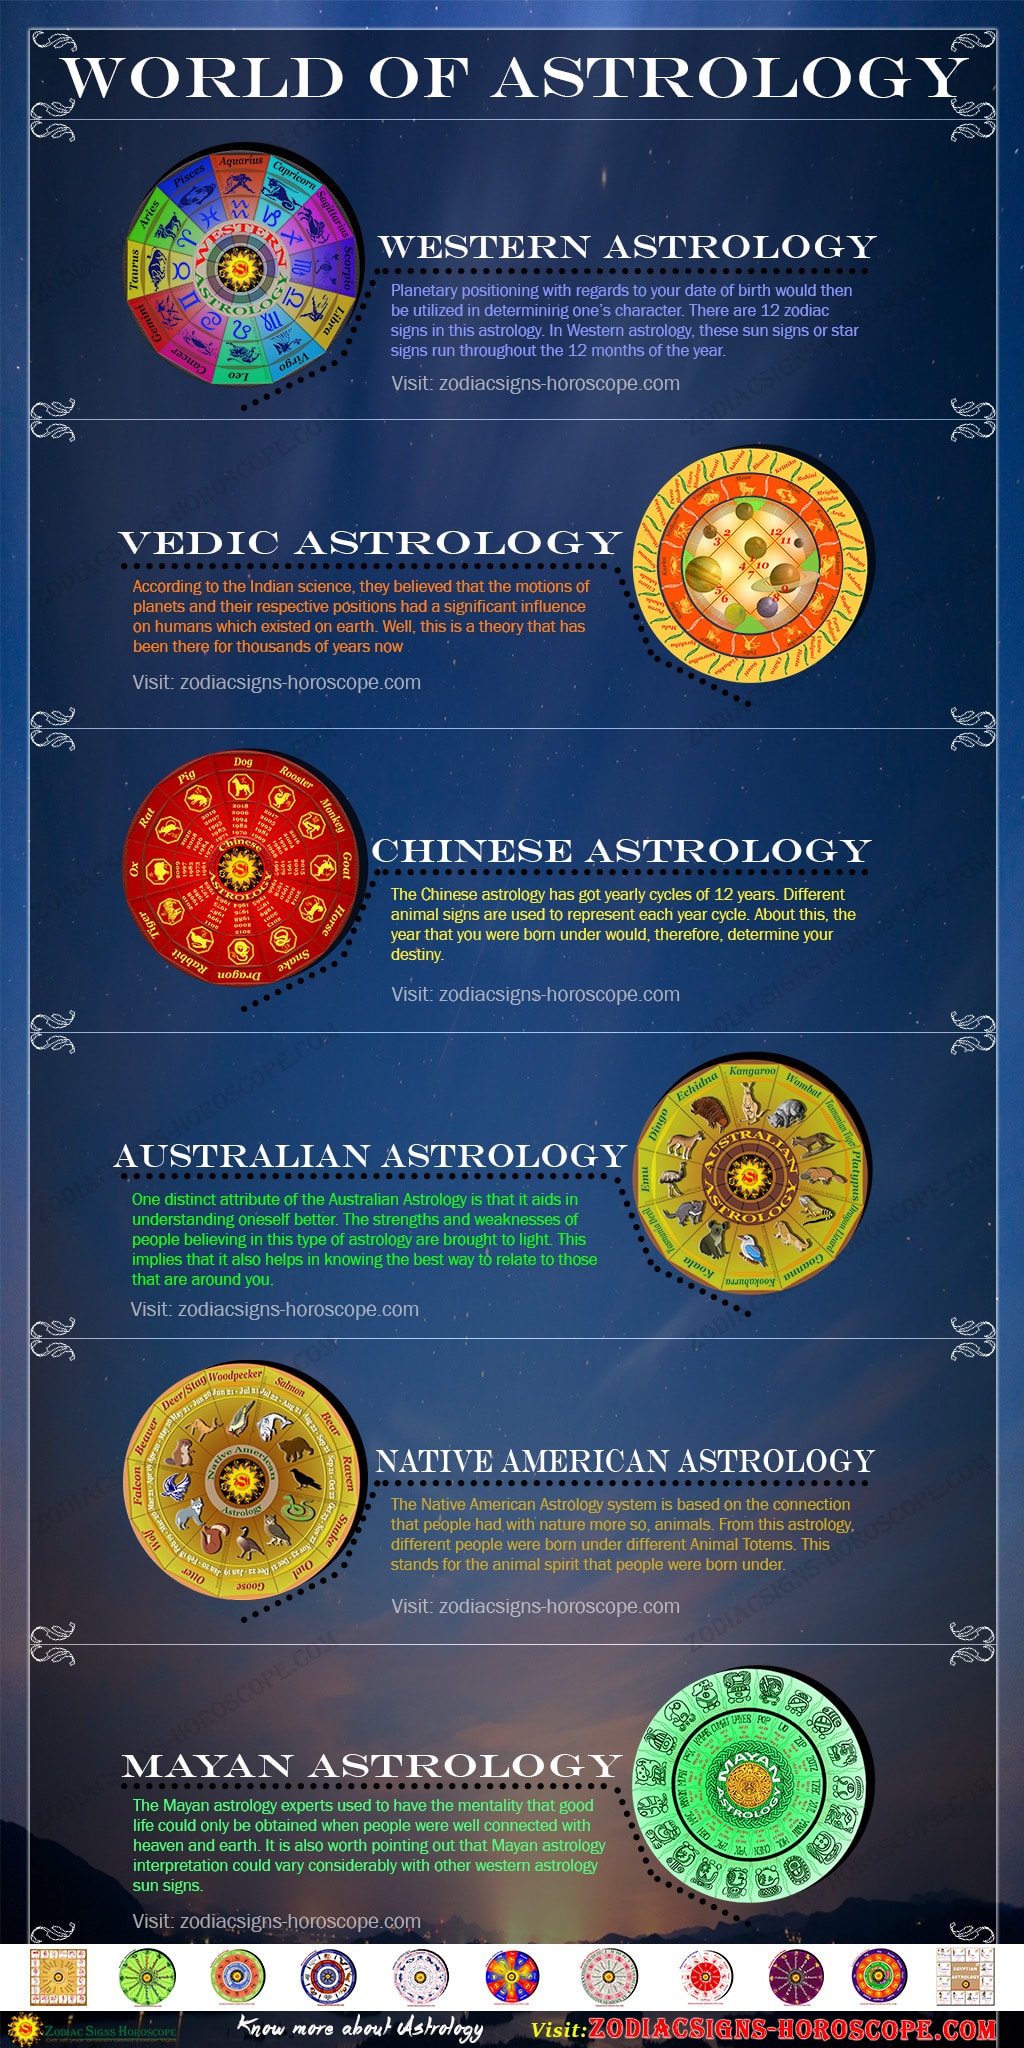 Svijet astrologije - Infografika o astrologiji